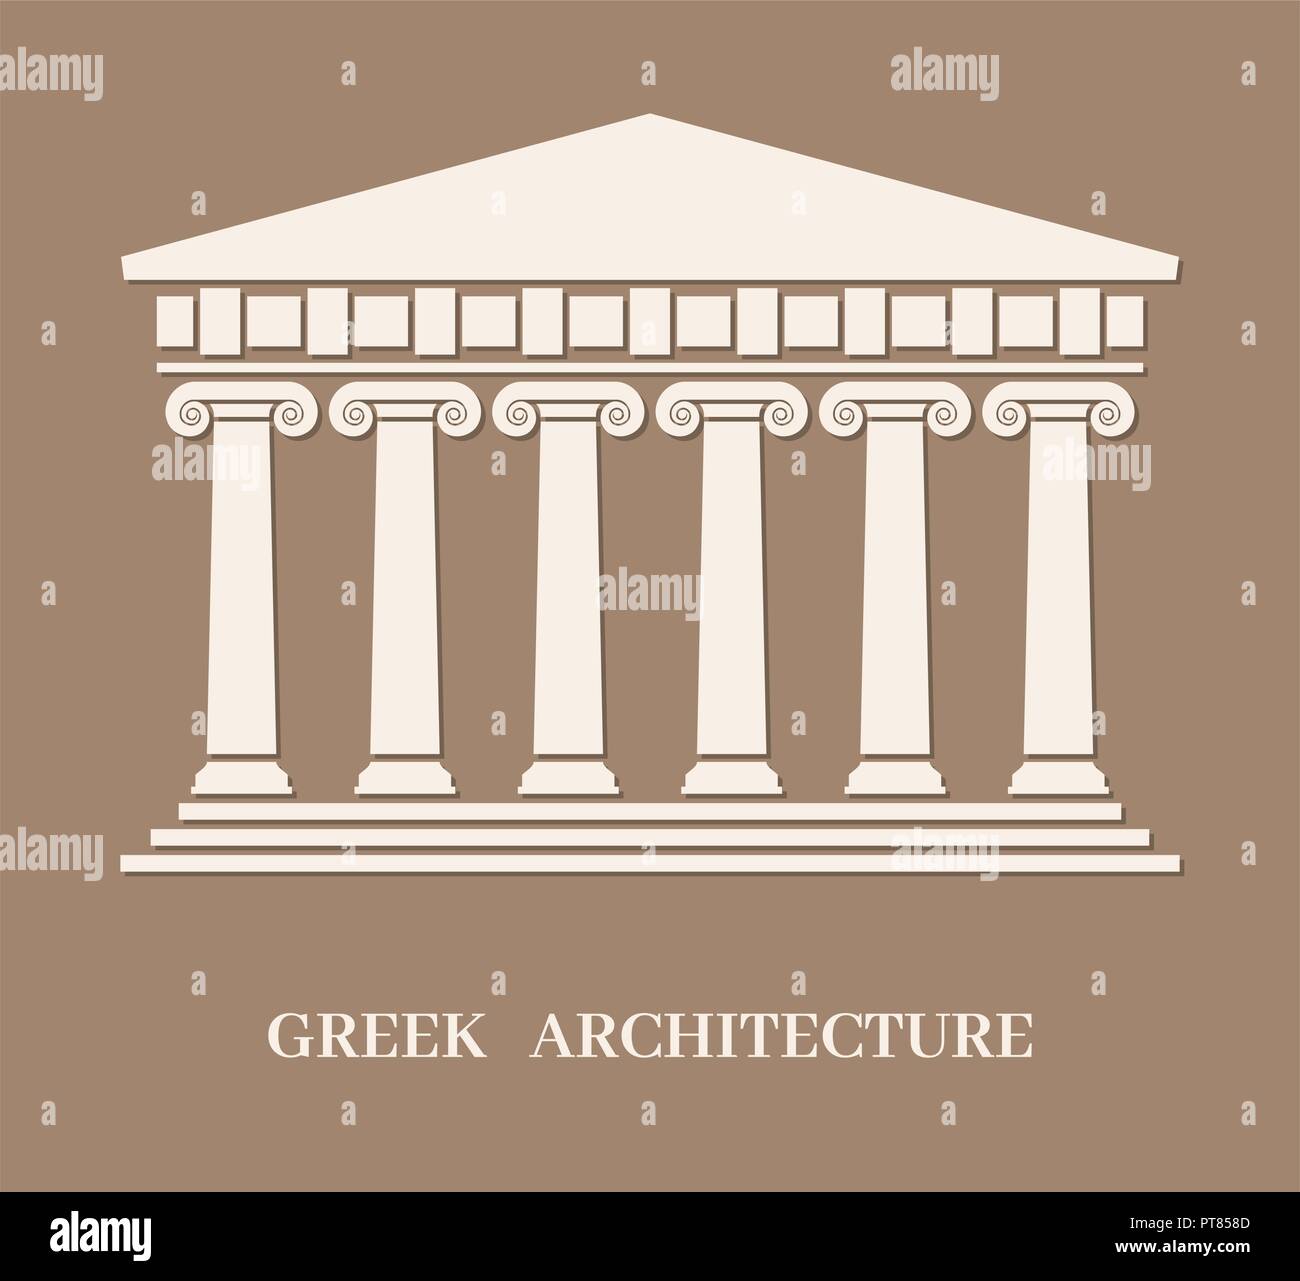 L'architecture grecque antique vecteur avec colonnes. temple romain bâtiment avec piliers. Le logo du Parthénon acropole grecque ou de l'architecture grecque avec texte Illustration de Vecteur